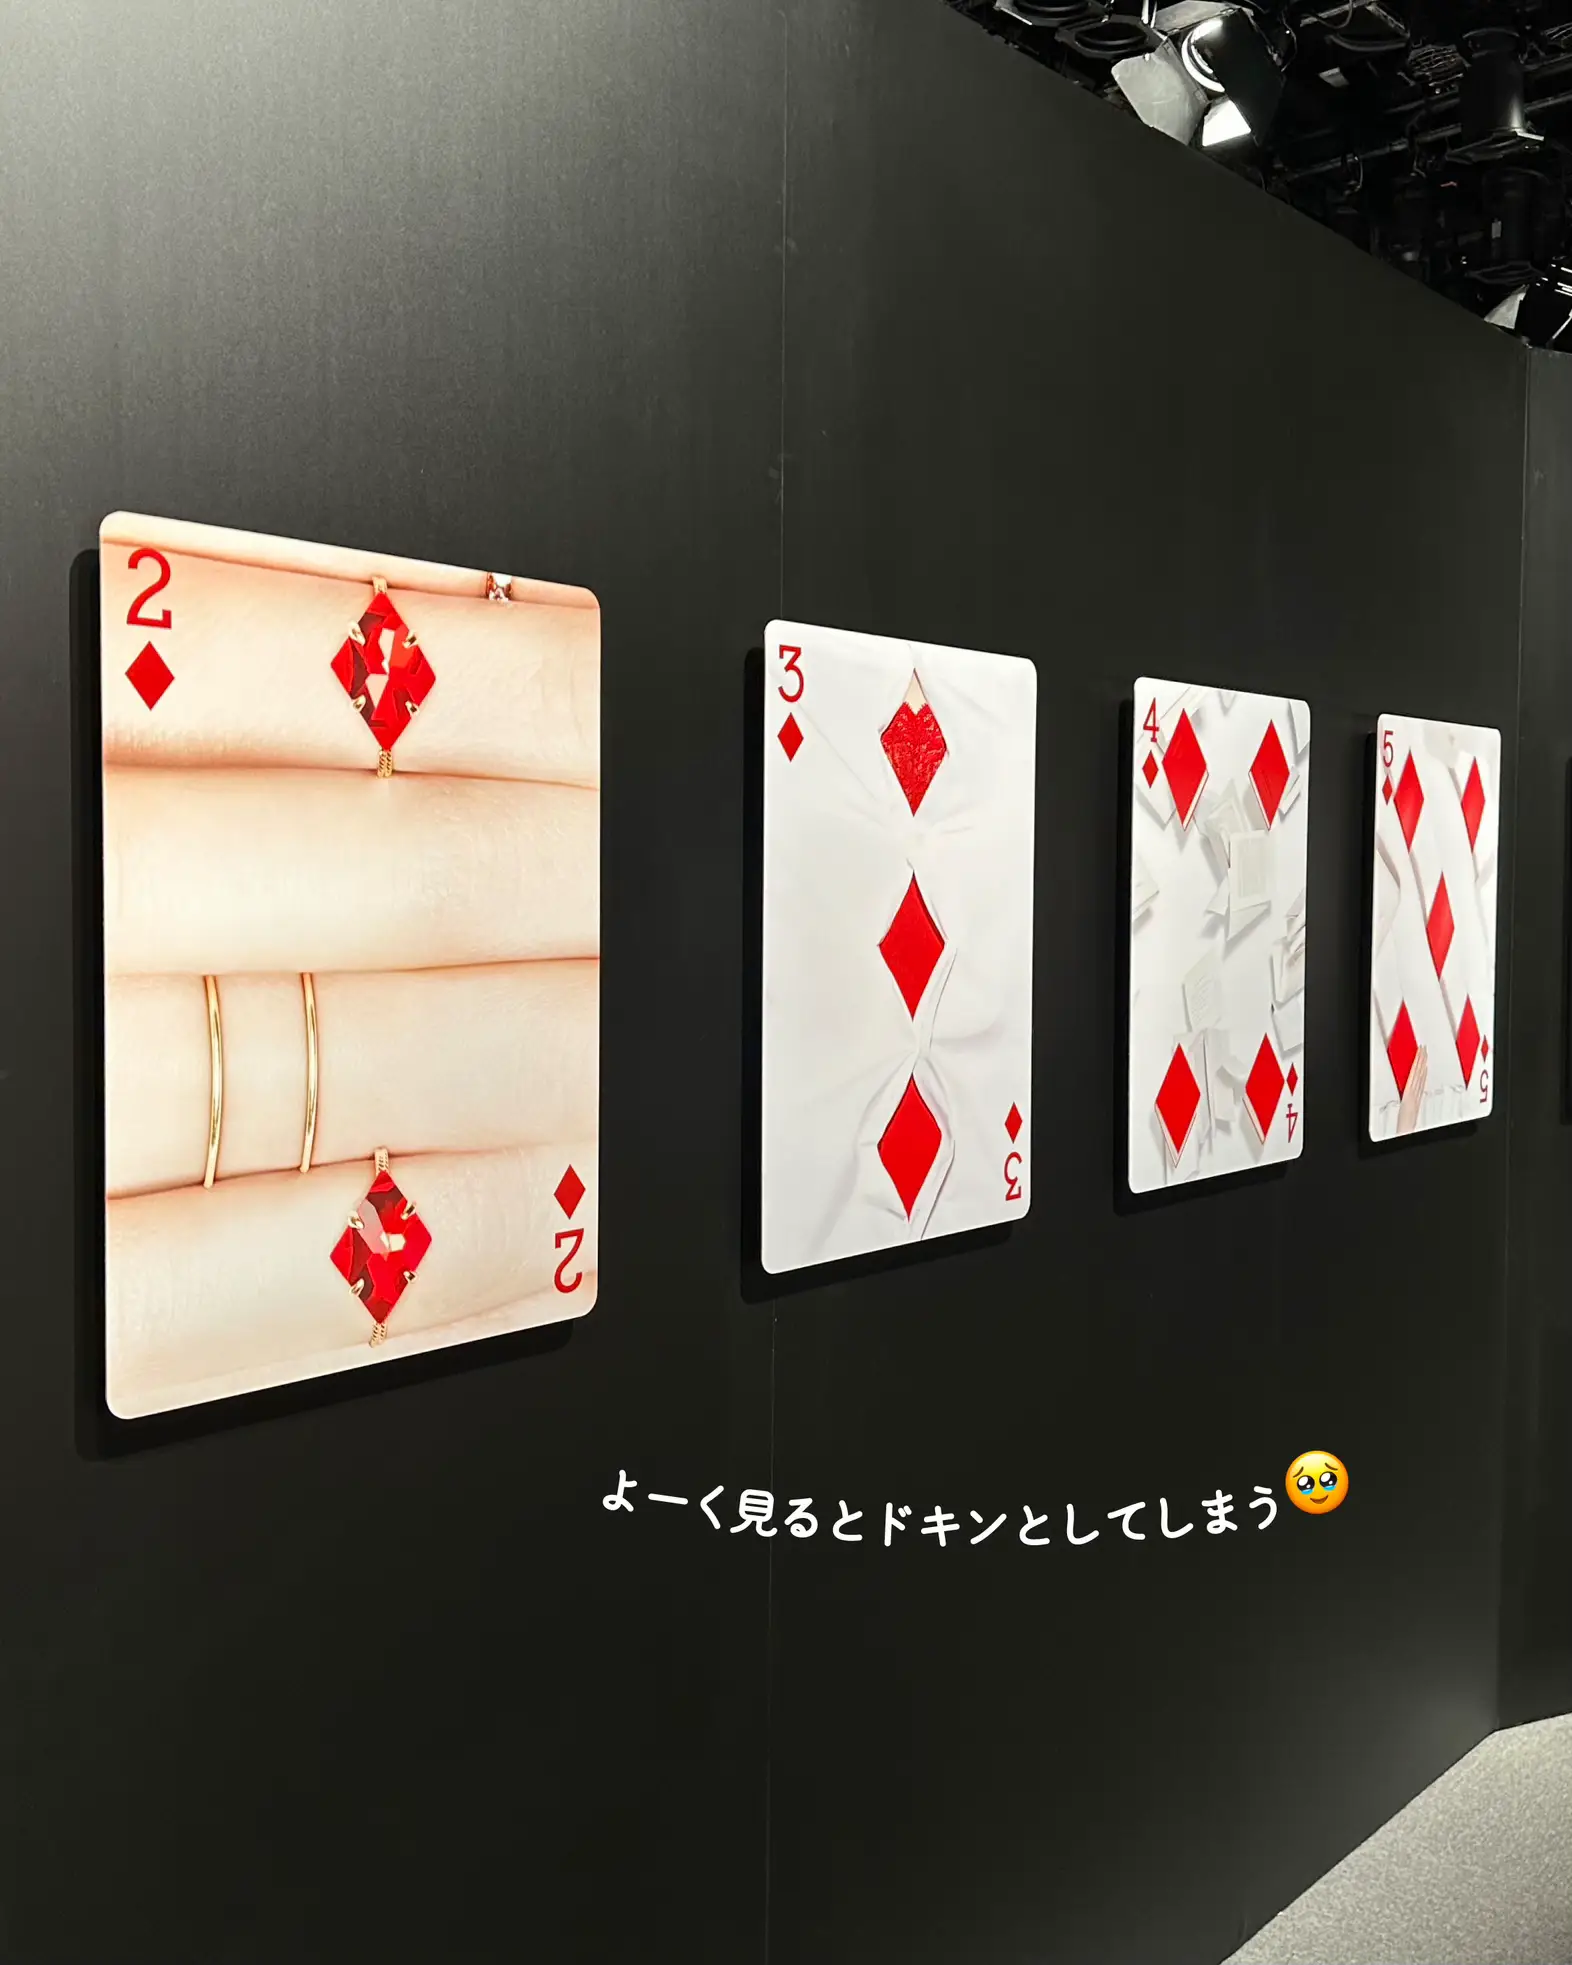 日本初公開【東京】吉田ユニさん新作展示❤️♠️♦️♣️ | まやtrip 